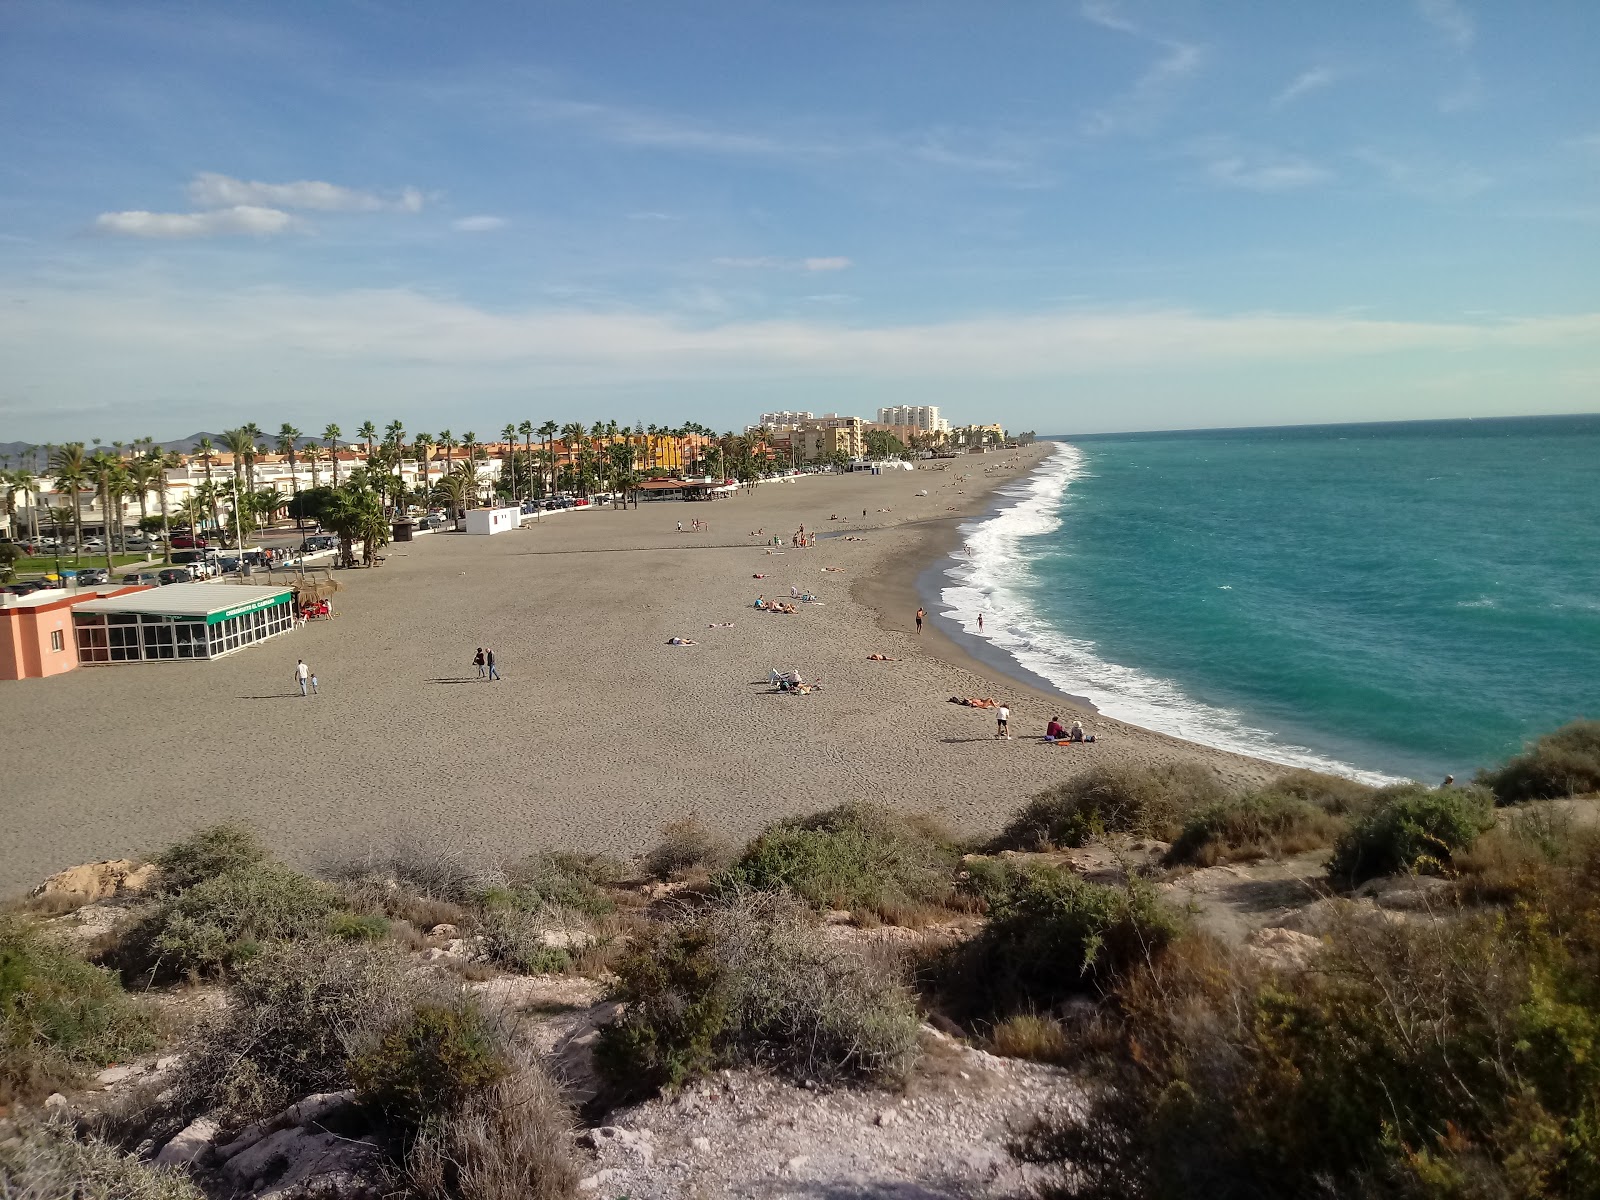 Fotografija Playas de Salobrena z sivi fini kamenček površino